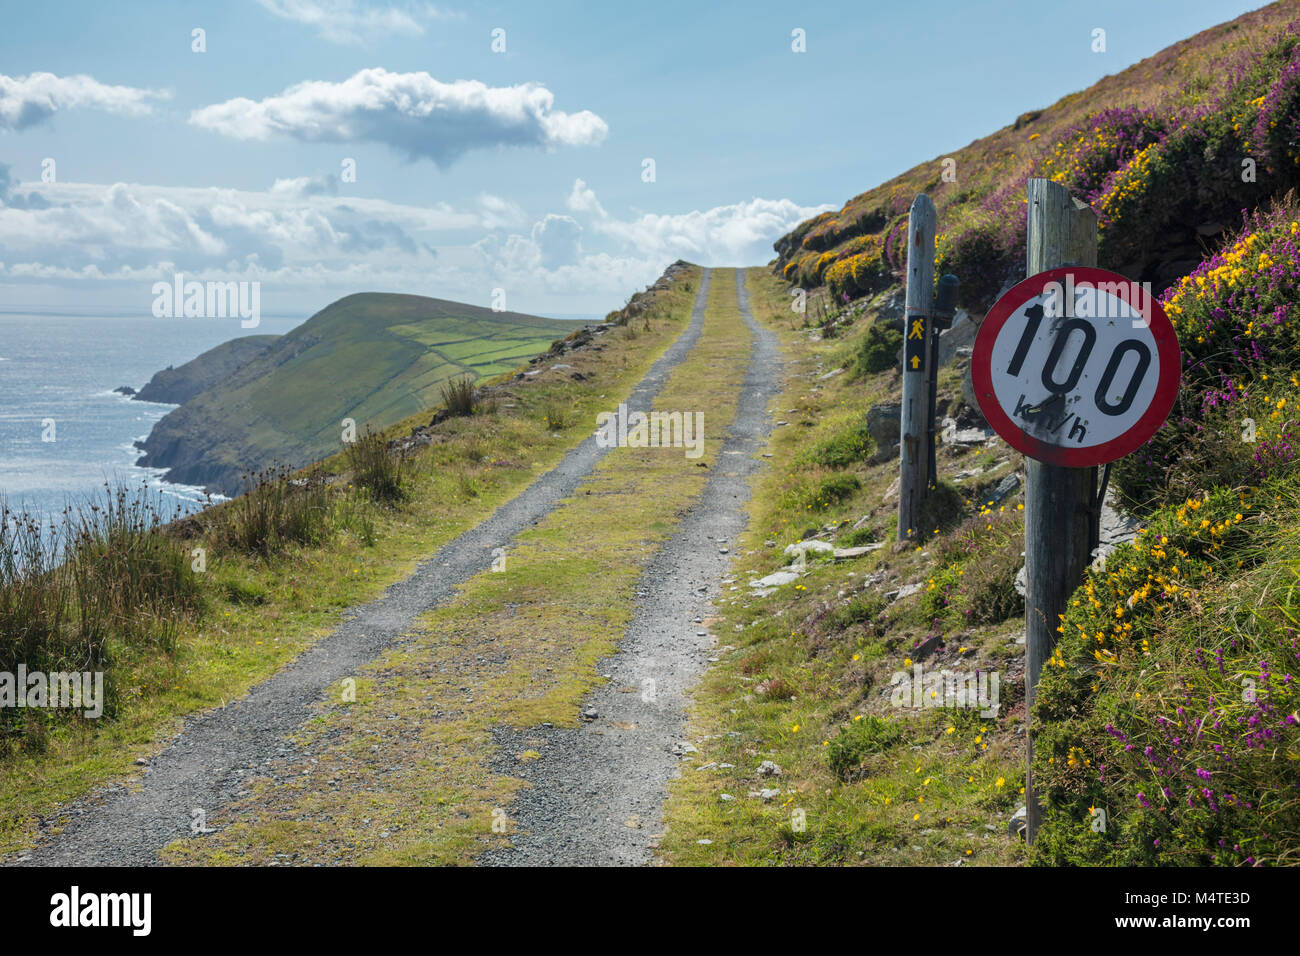 Schrullige Vorzeichen der Drehzahl, dursey Island, Beara Halbinsel, County Cork, Irland. Stockfoto